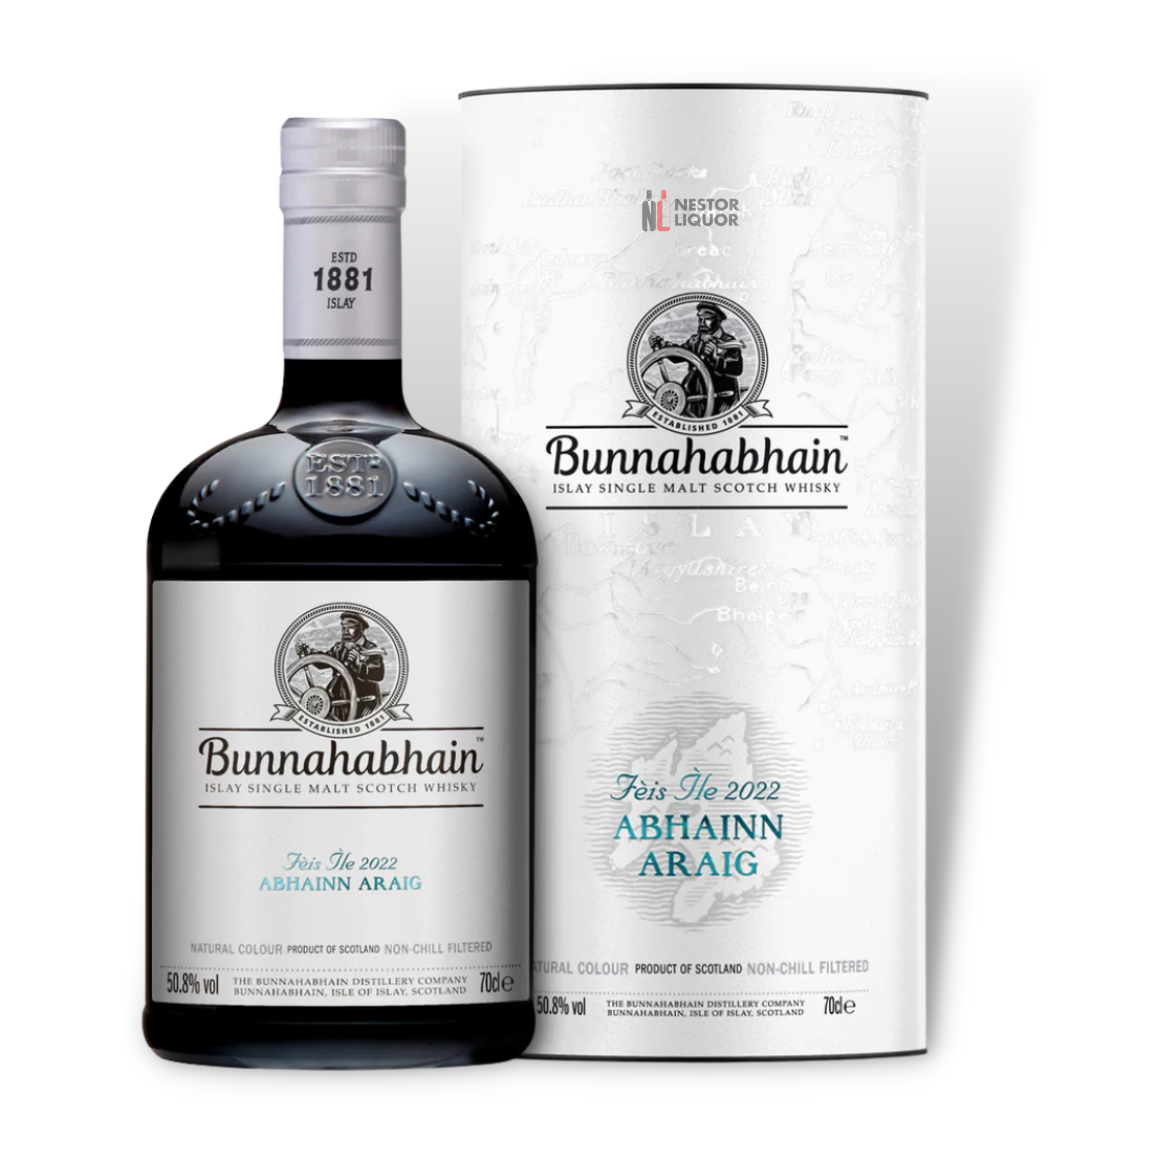 Bunnahabhain Single Malt Scotch Feis Ile 2022 Abhainn Araig 700ml_nestor liquor